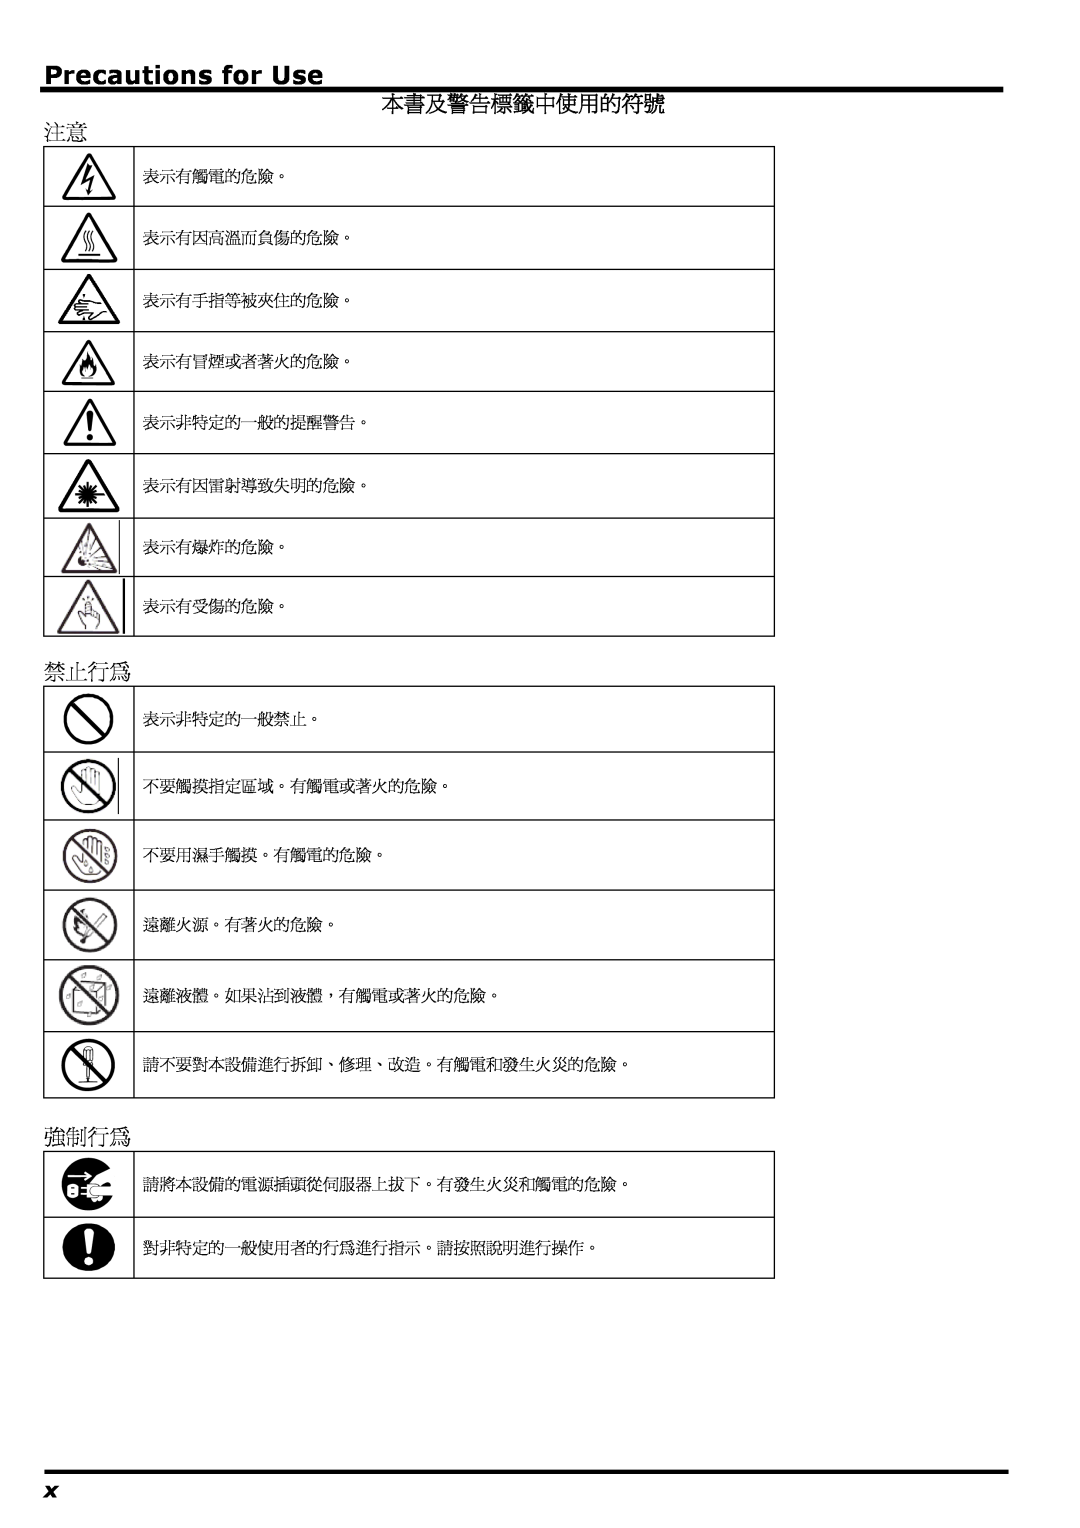 NEC N8406-022 manual Precautions for Use, 本書及警告標籤中使用的符號, 禁止行為, 強制行為, 表示有因雷射導致失明的危險。 表示有爆炸的危險。 表示有受傷的危險。 